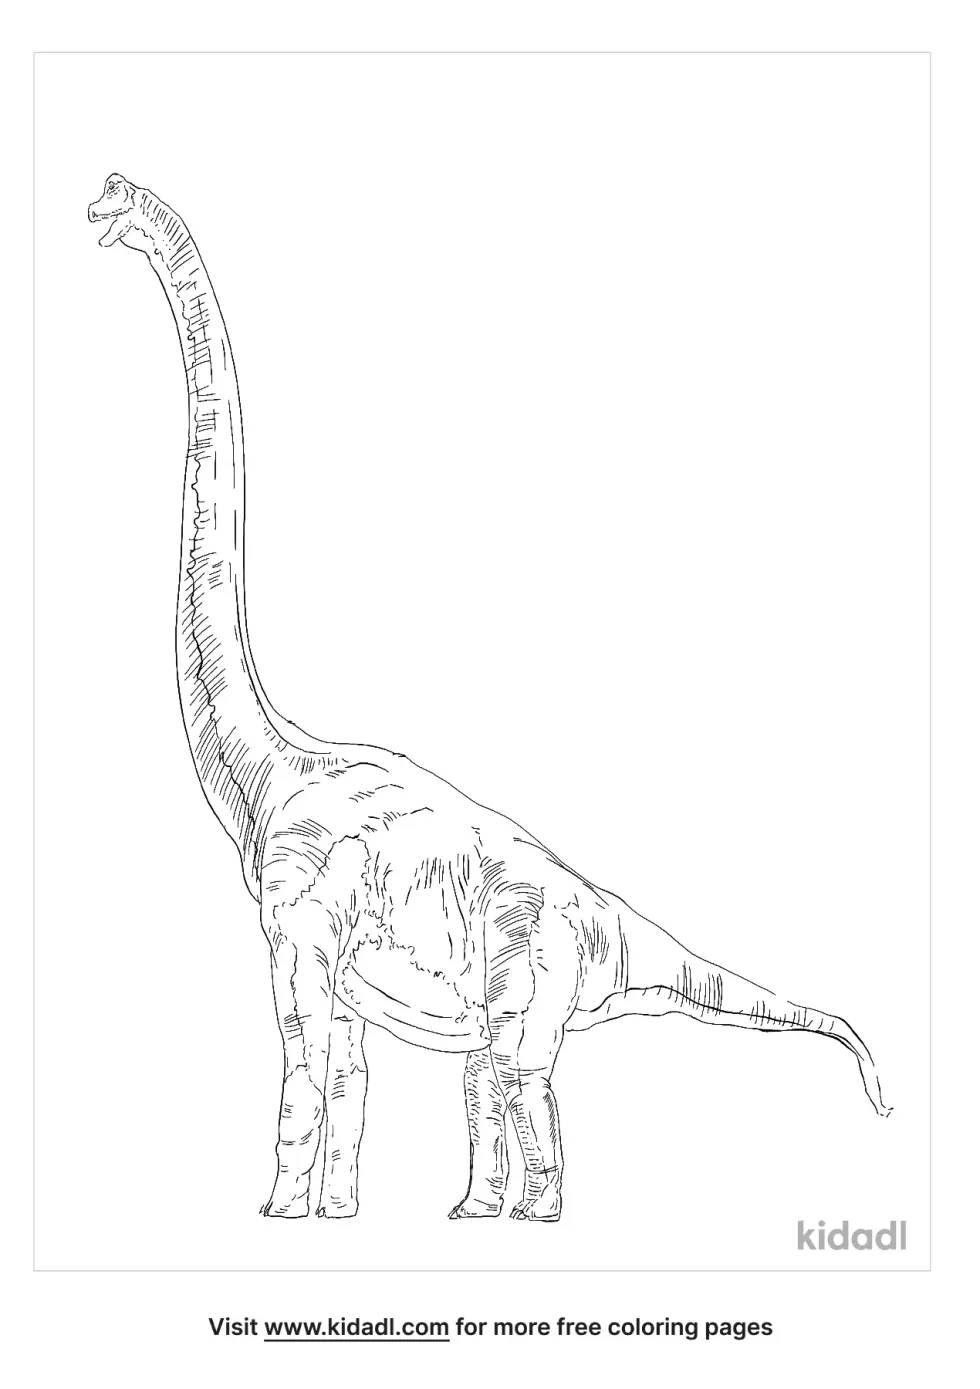 Dinodocus